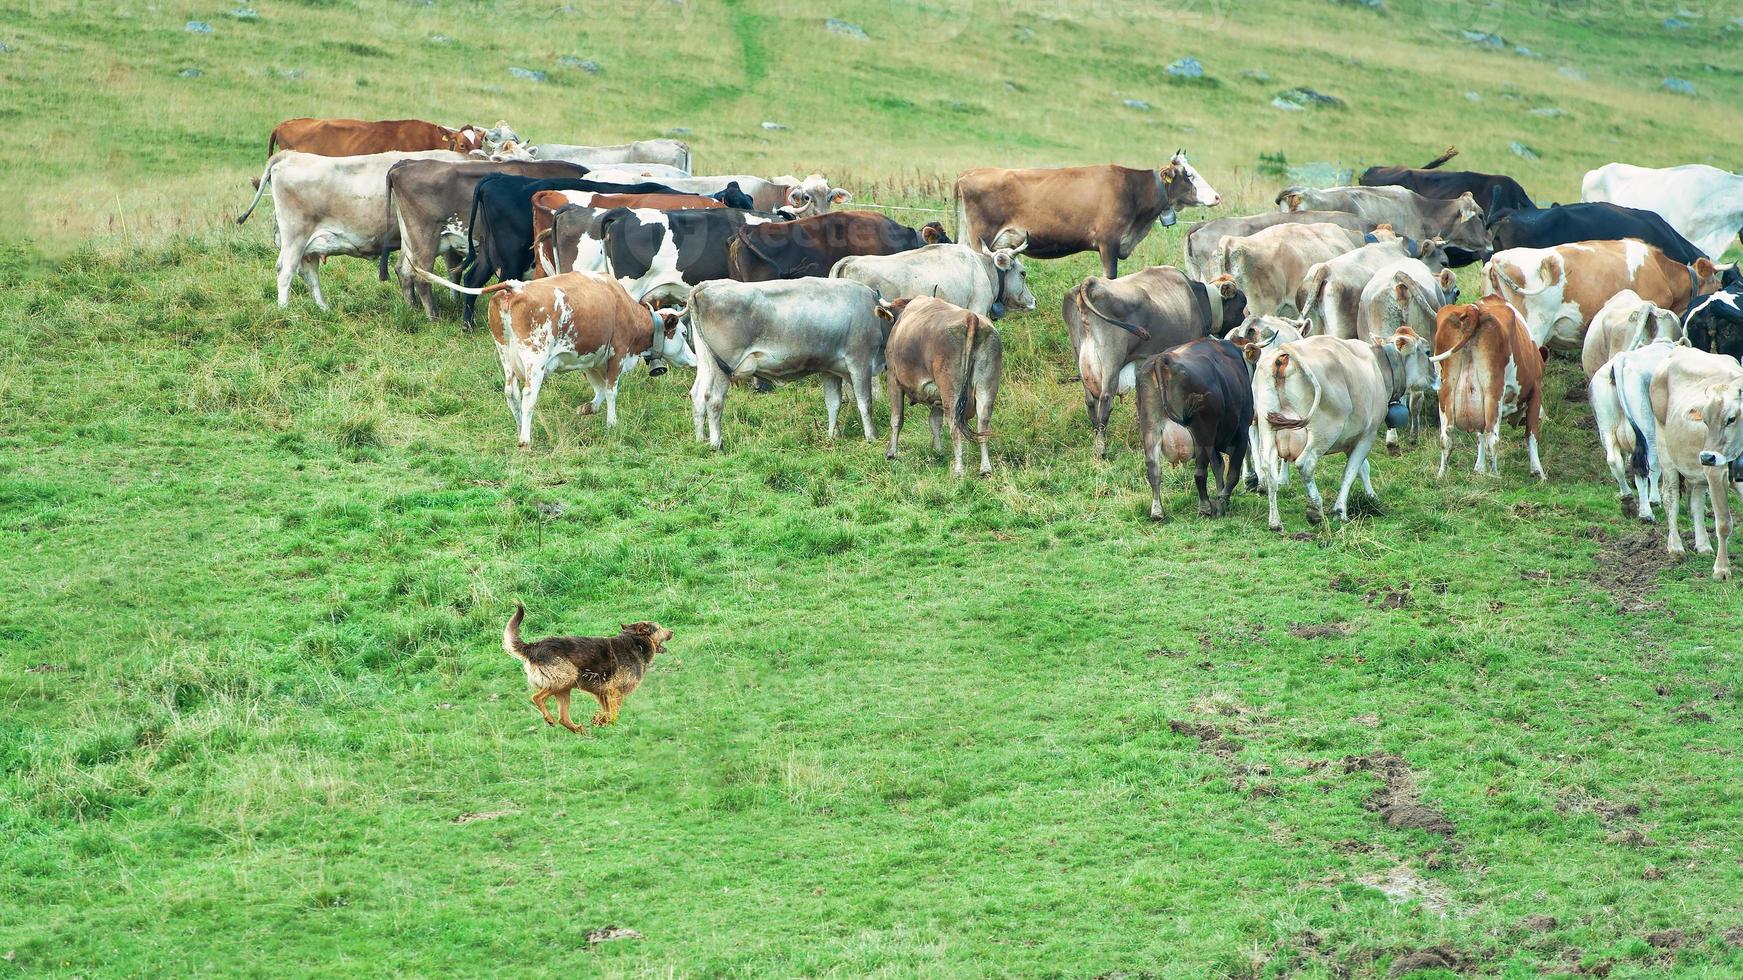 schäferhund in aktion mit einer gruppe alpenkühe foto